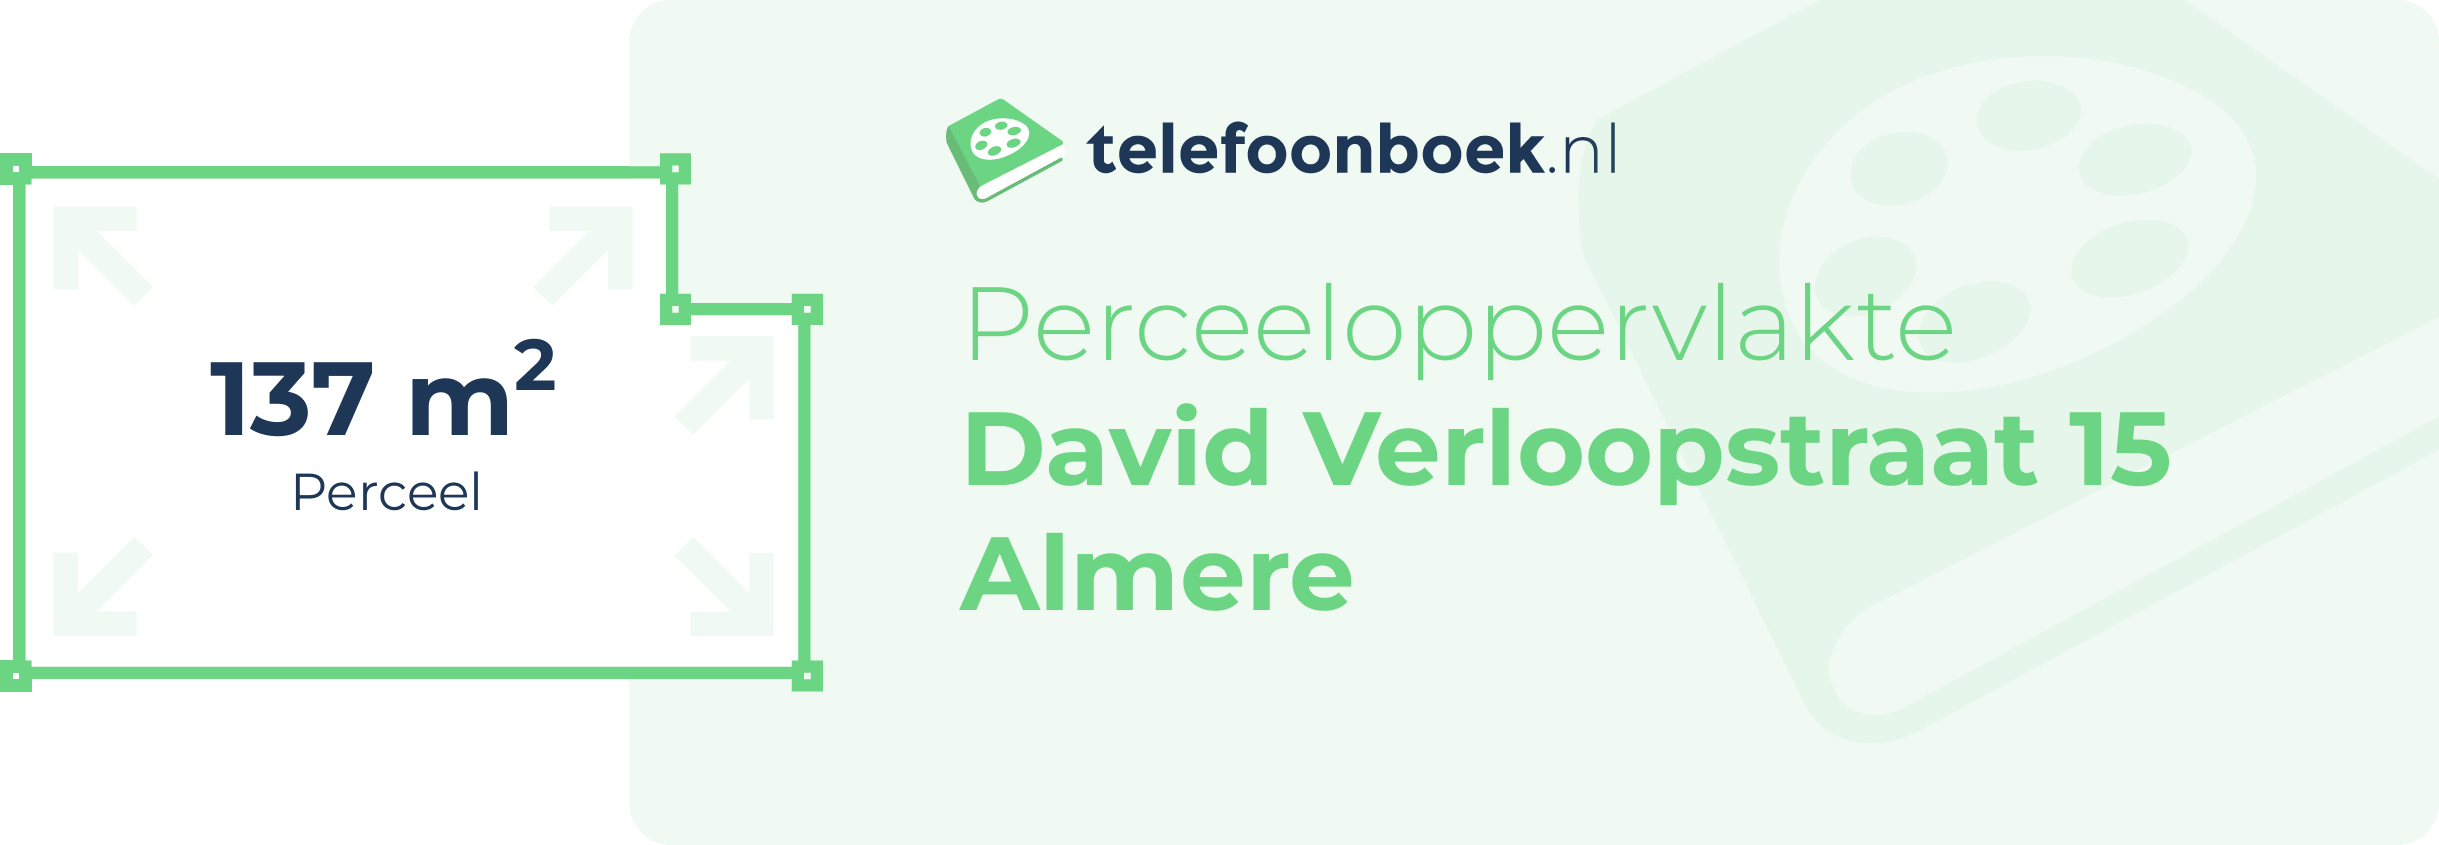 Perceeloppervlakte David Verloopstraat 15 Almere